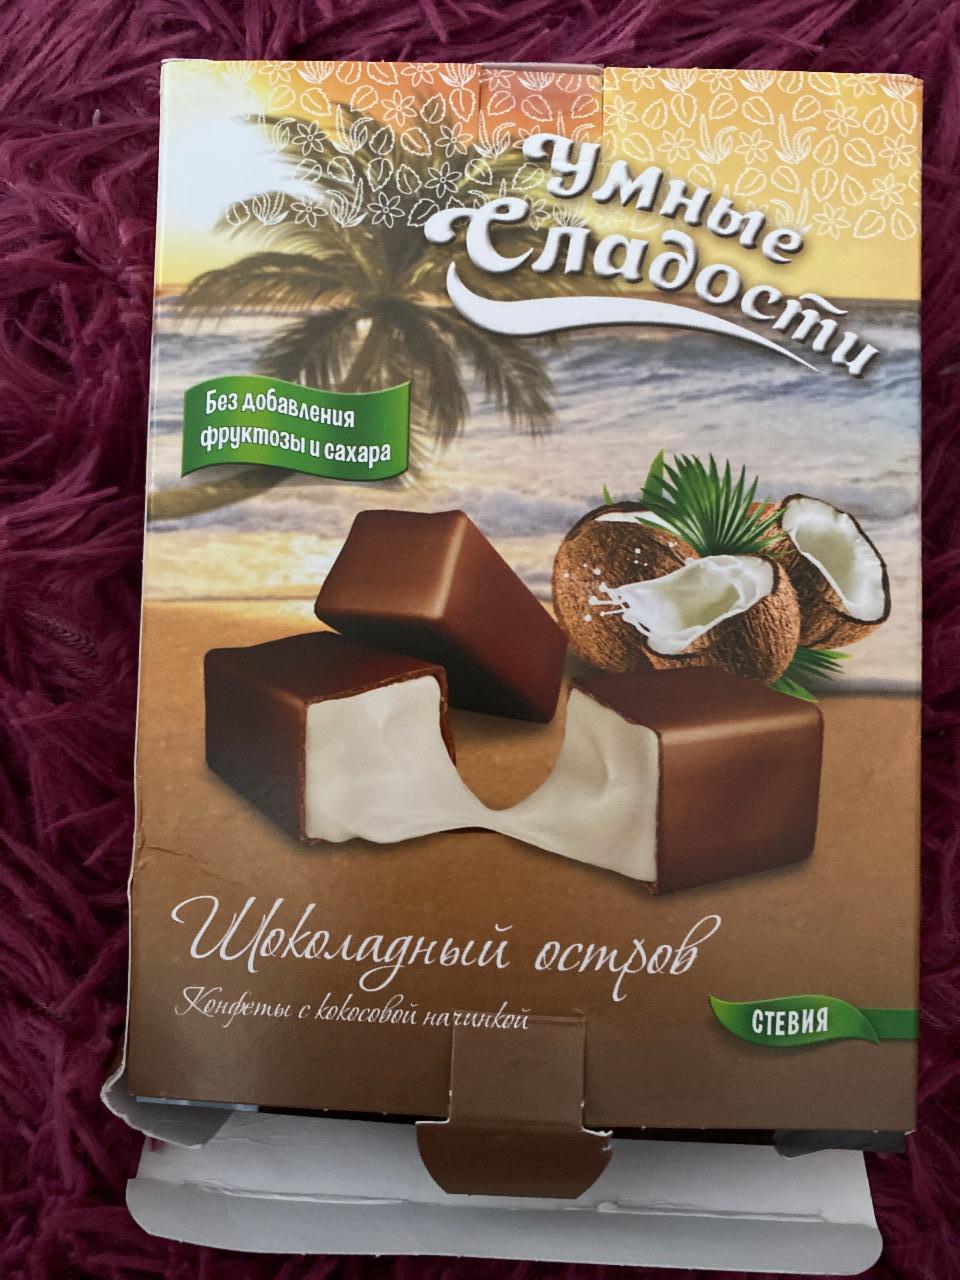 Фото - Шоколадный остров конфеты с кокосовой начинкой без фруктозы и сахара Умные сладости